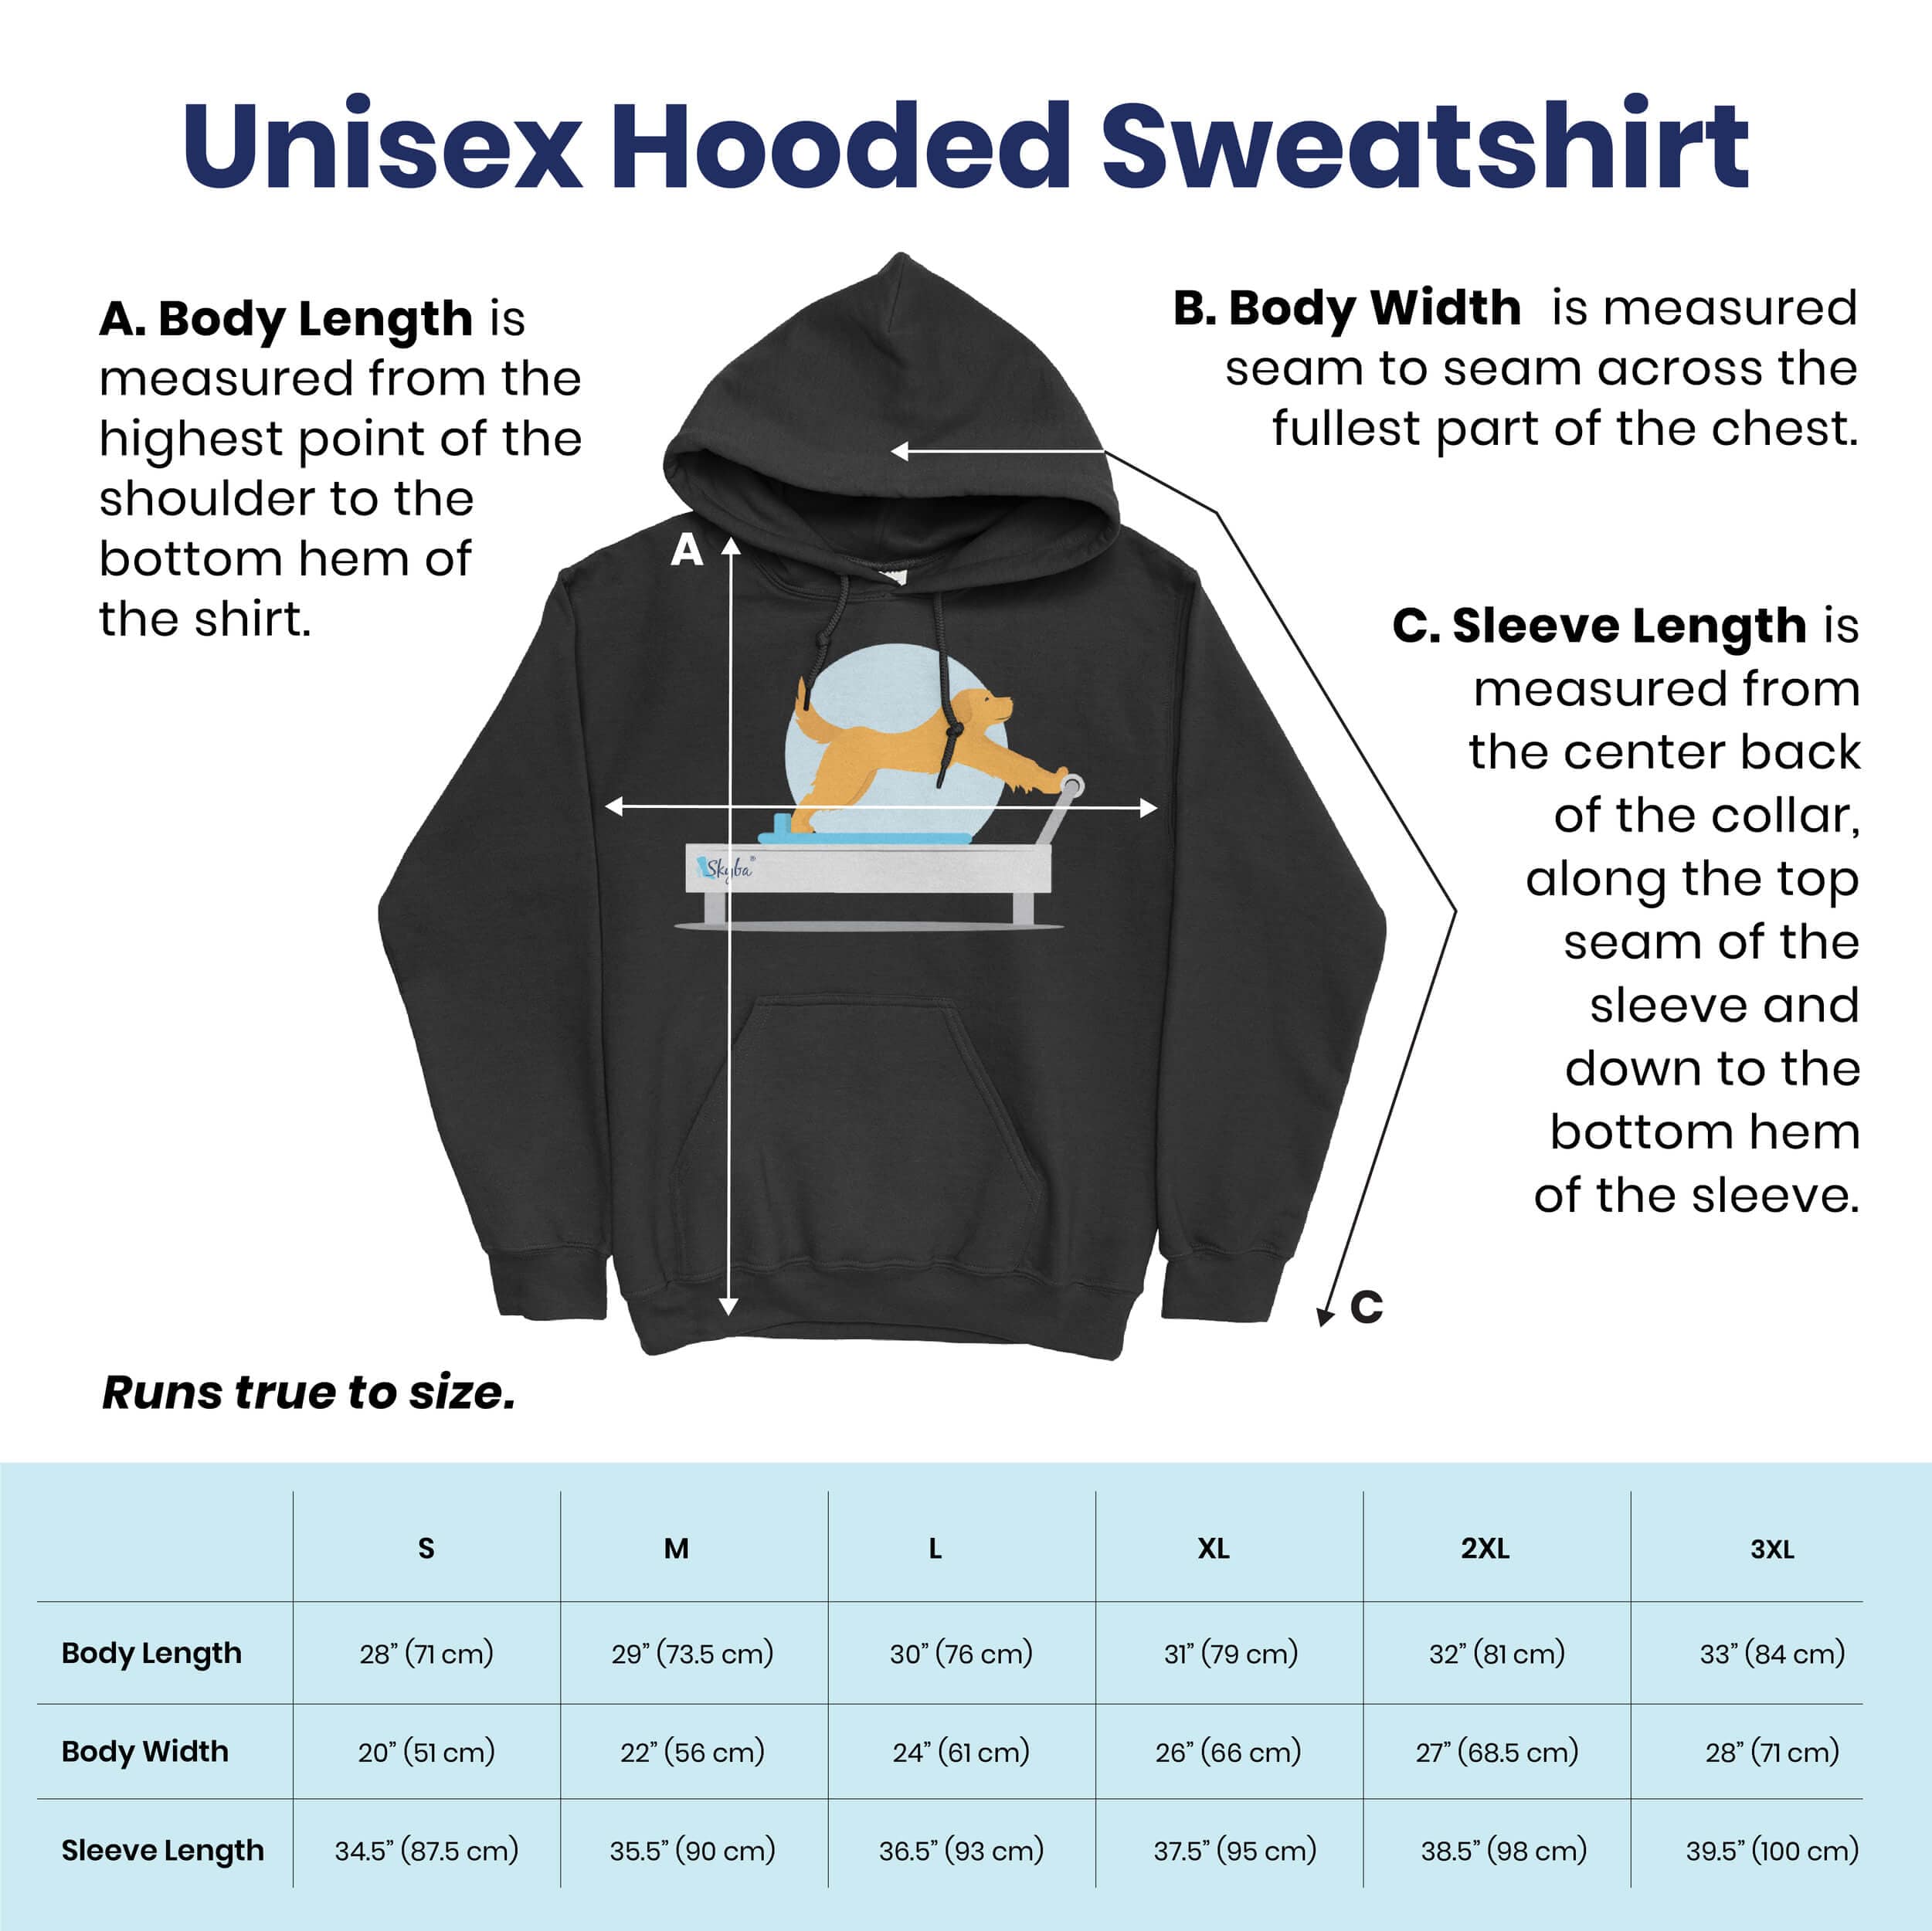 Flexible Horse on Reformer - Cozy Hooded Sweatshirt Skyba Hoodie